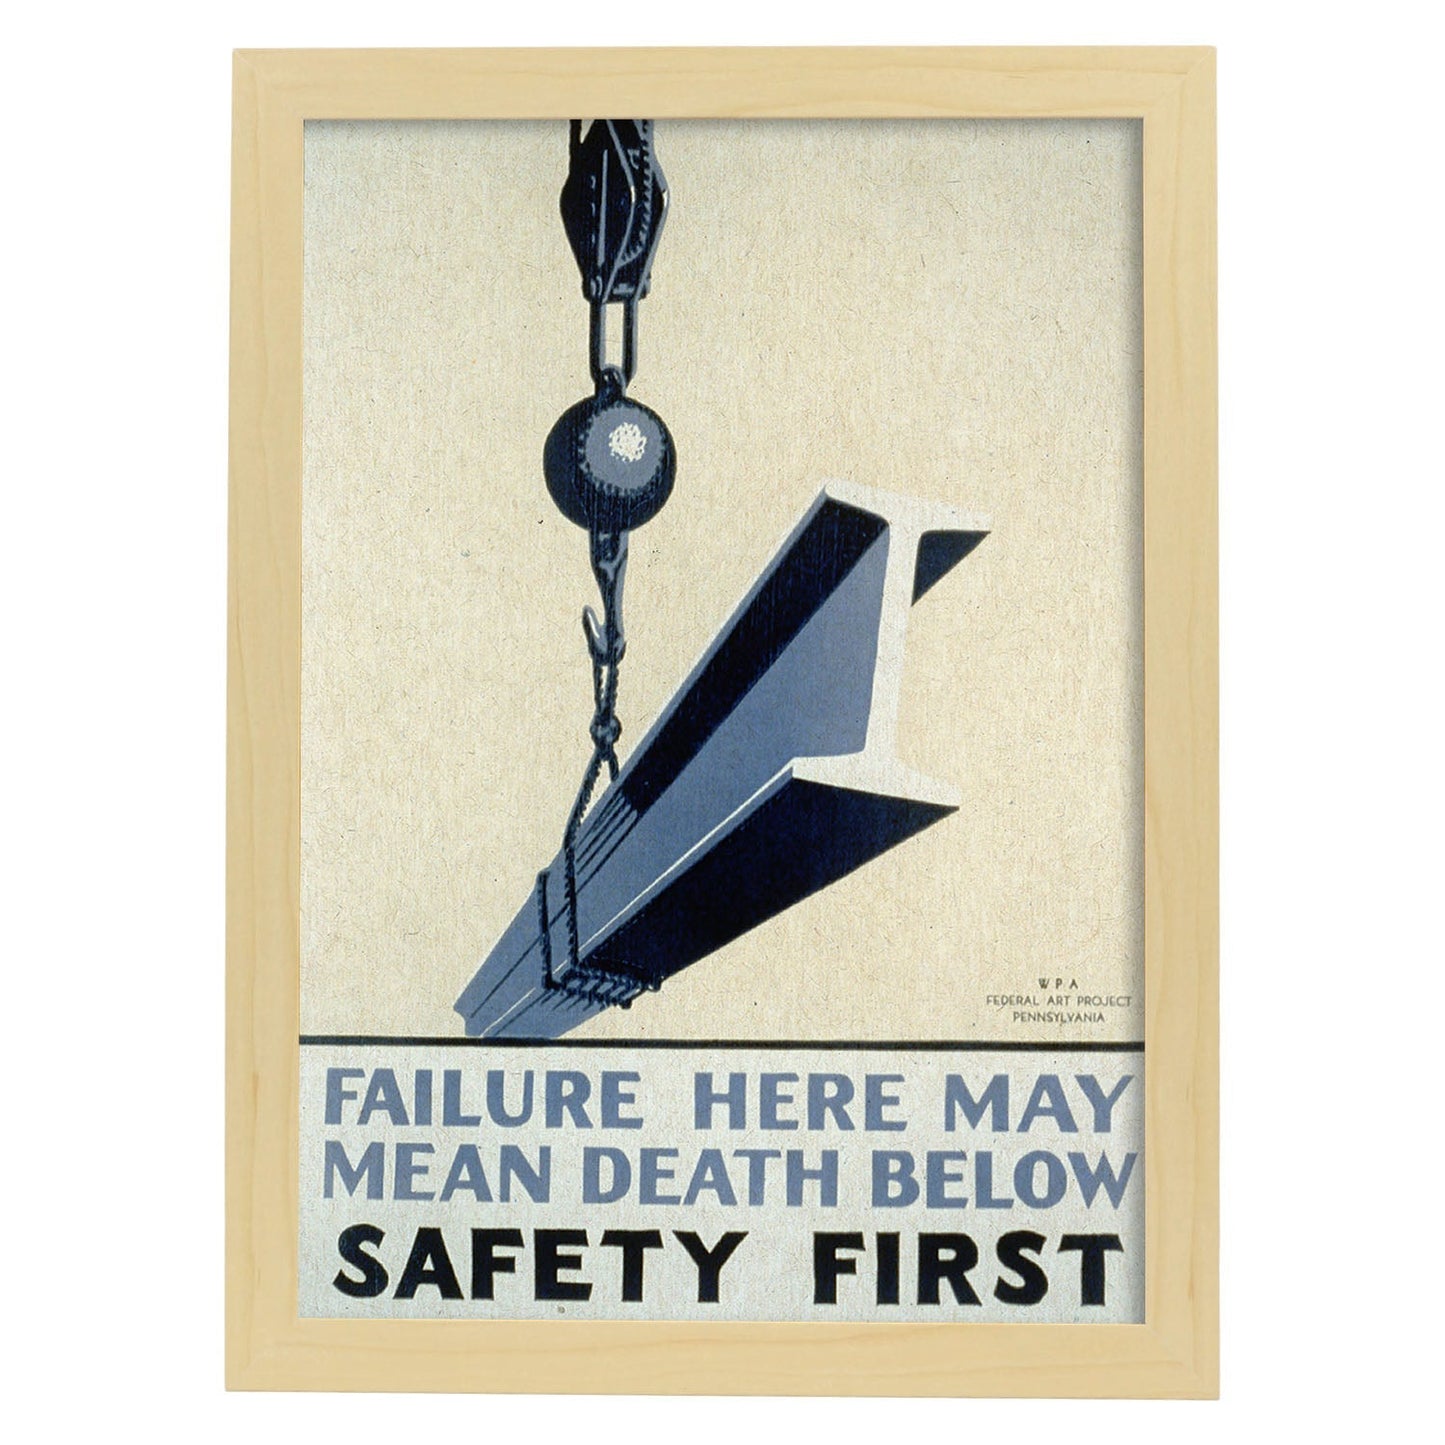 Poster vintage. Cartel vintage del departamento federal de Pennsylvania "Safety first".-Artwork-Nacnic-A4-Marco Madera clara-Nacnic Estudio SL